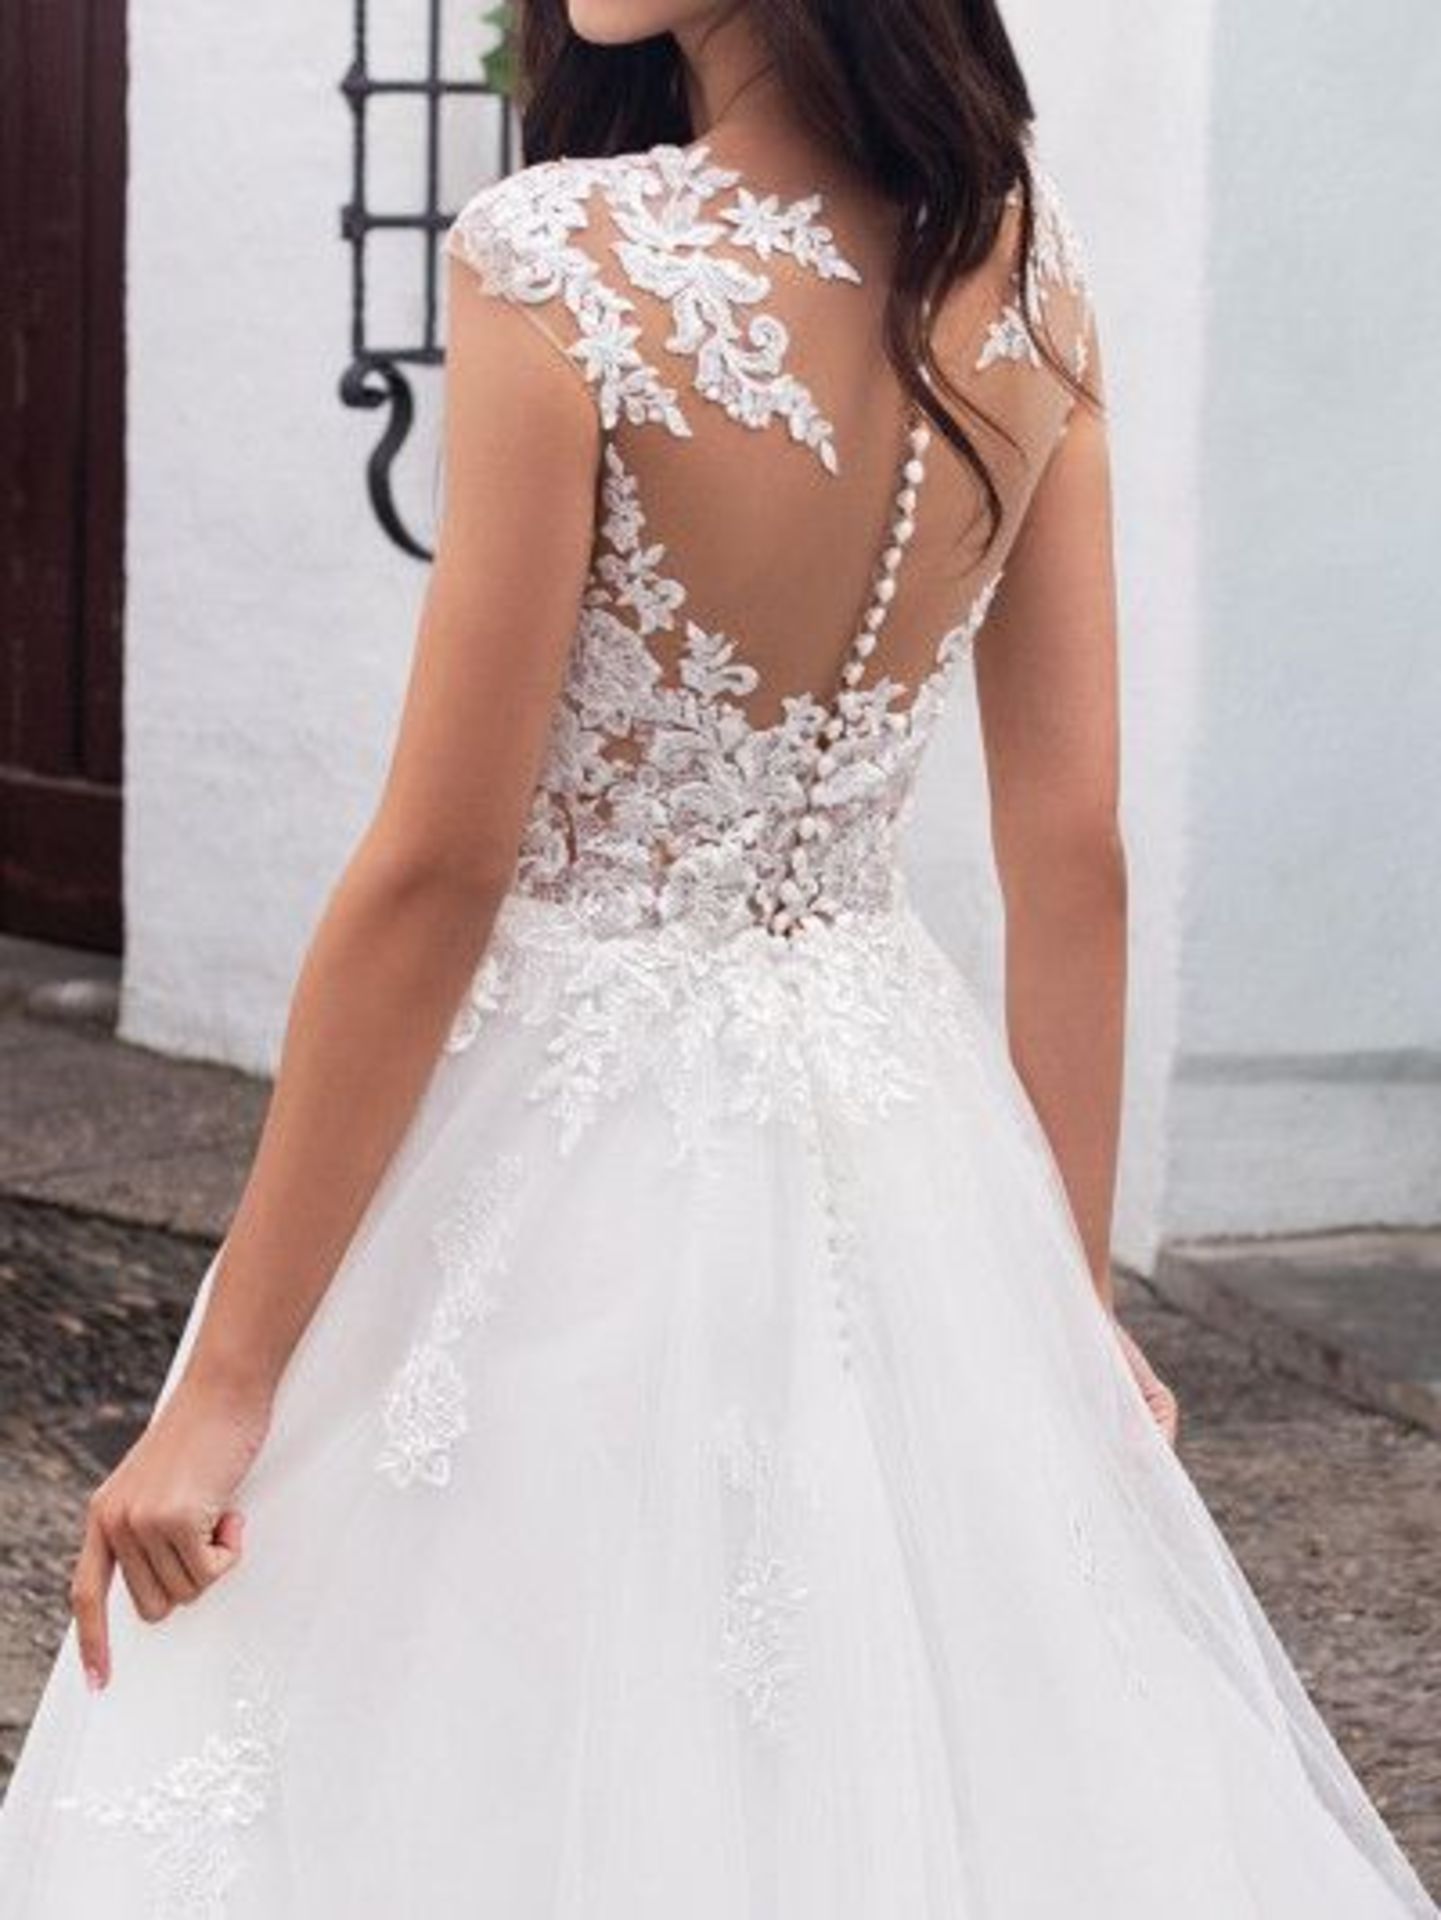 1 x PRONOVIAS Stunning Lace And Chiffon Full Skirted Designer Wedding Dress RRP £1,800 UK12 - Image 3 of 7